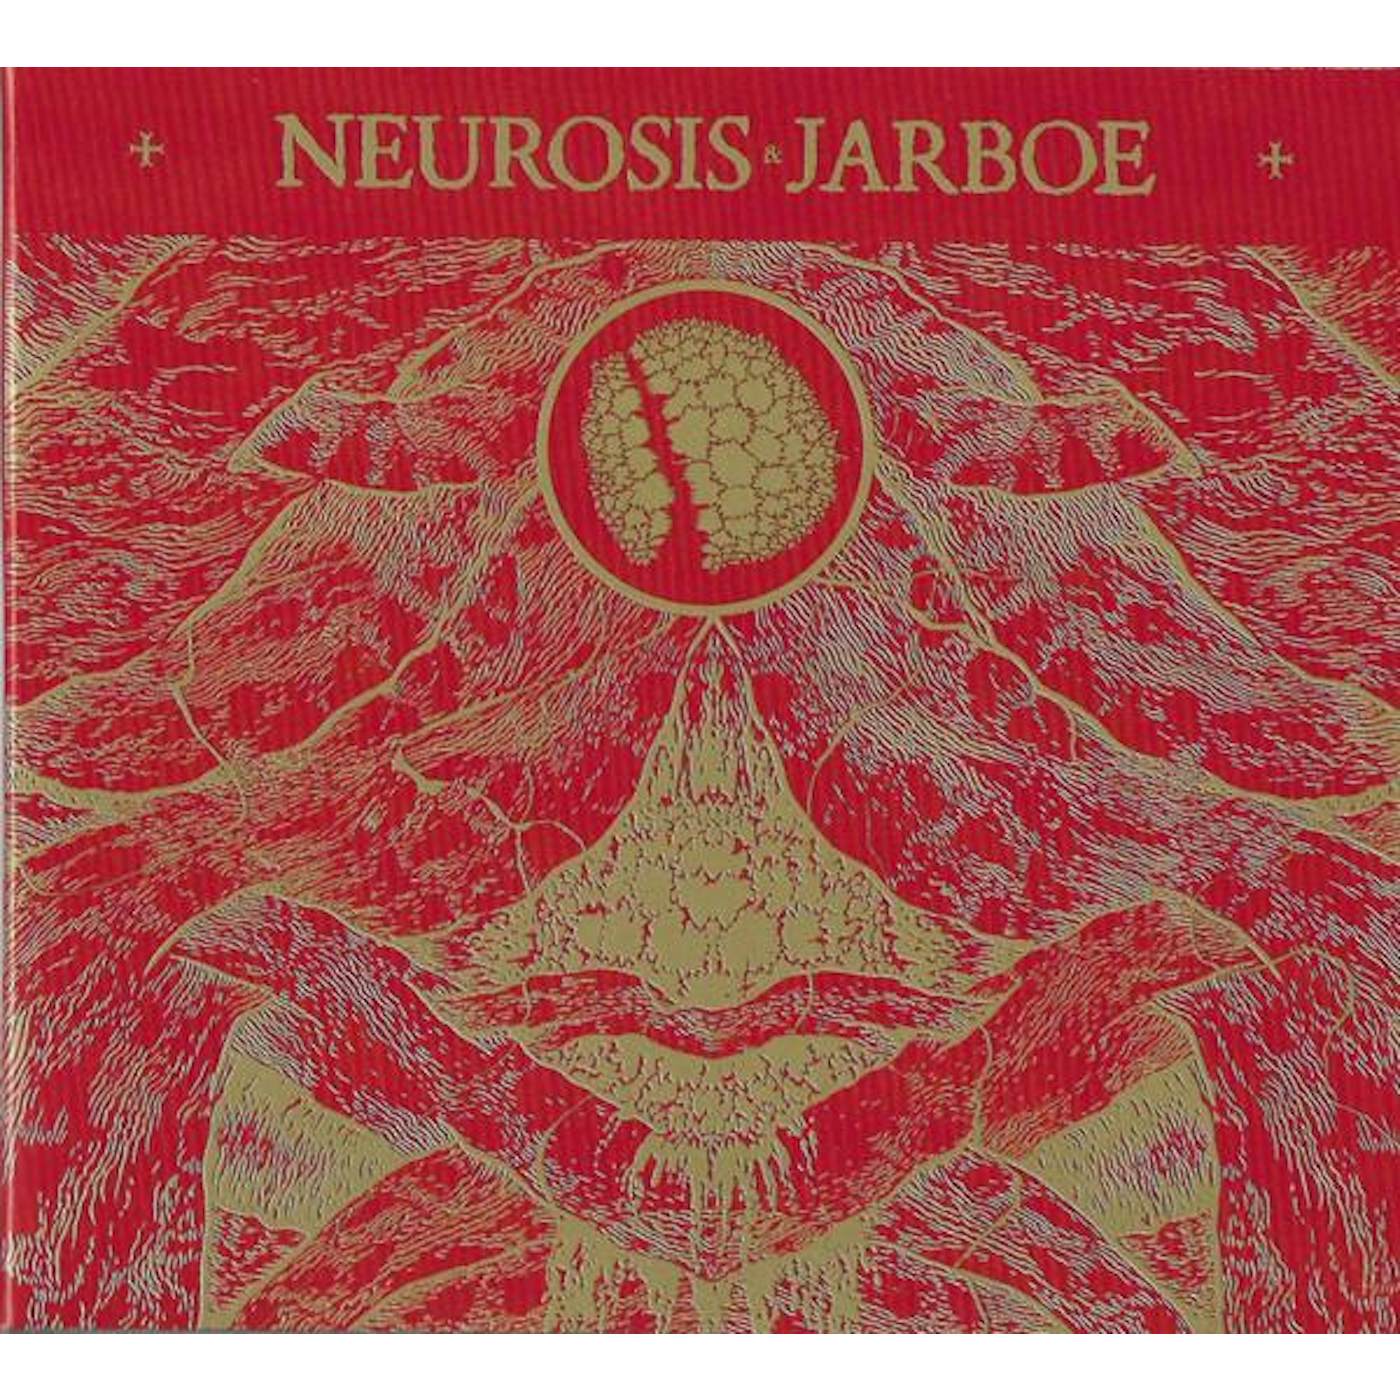 NEUROSIS & JARBOE REISSUE CD